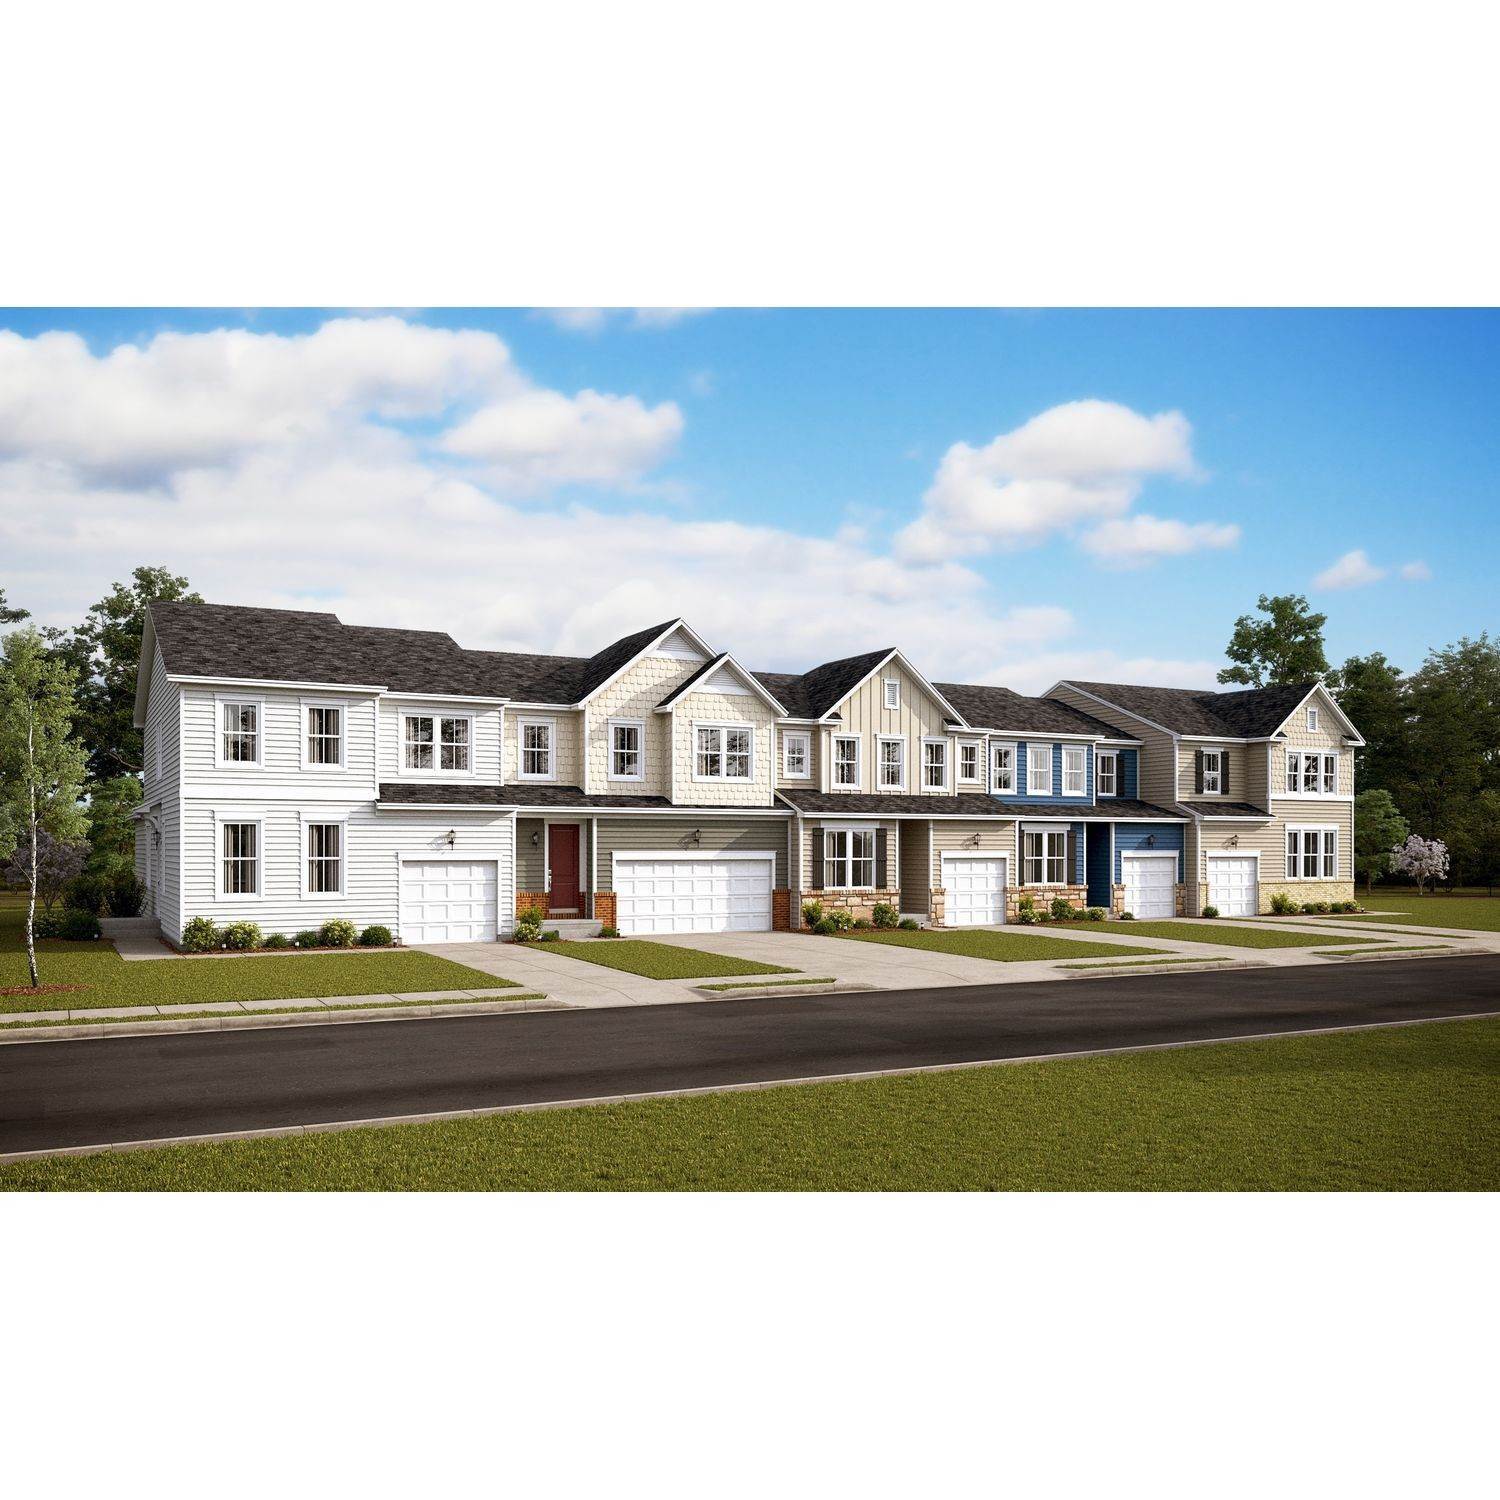 K. Hovnanian's® Four Seasons at Virginia Crossing - Villas building at 14001 Madrona Lane, Woodbridge, VA 22193